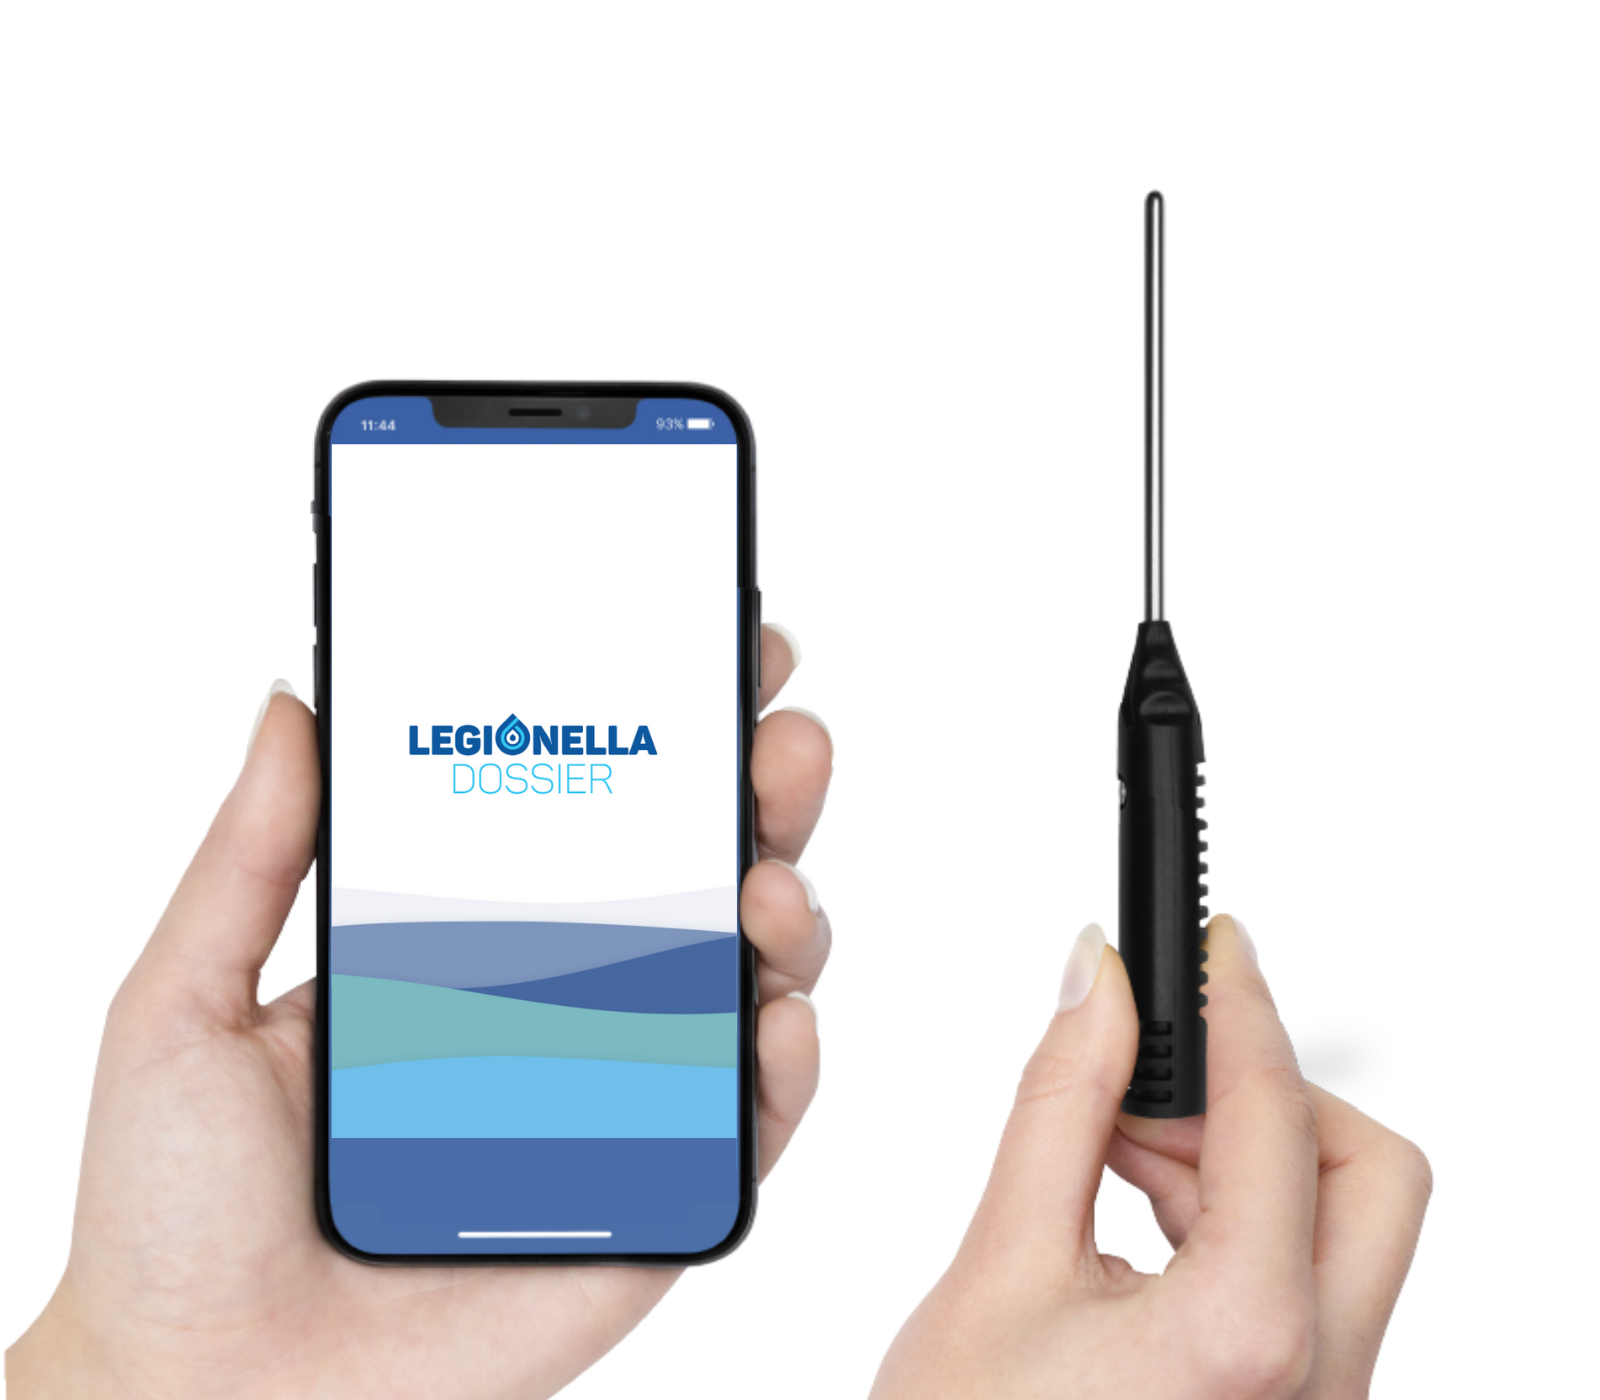 LegionellaDossier app with probe